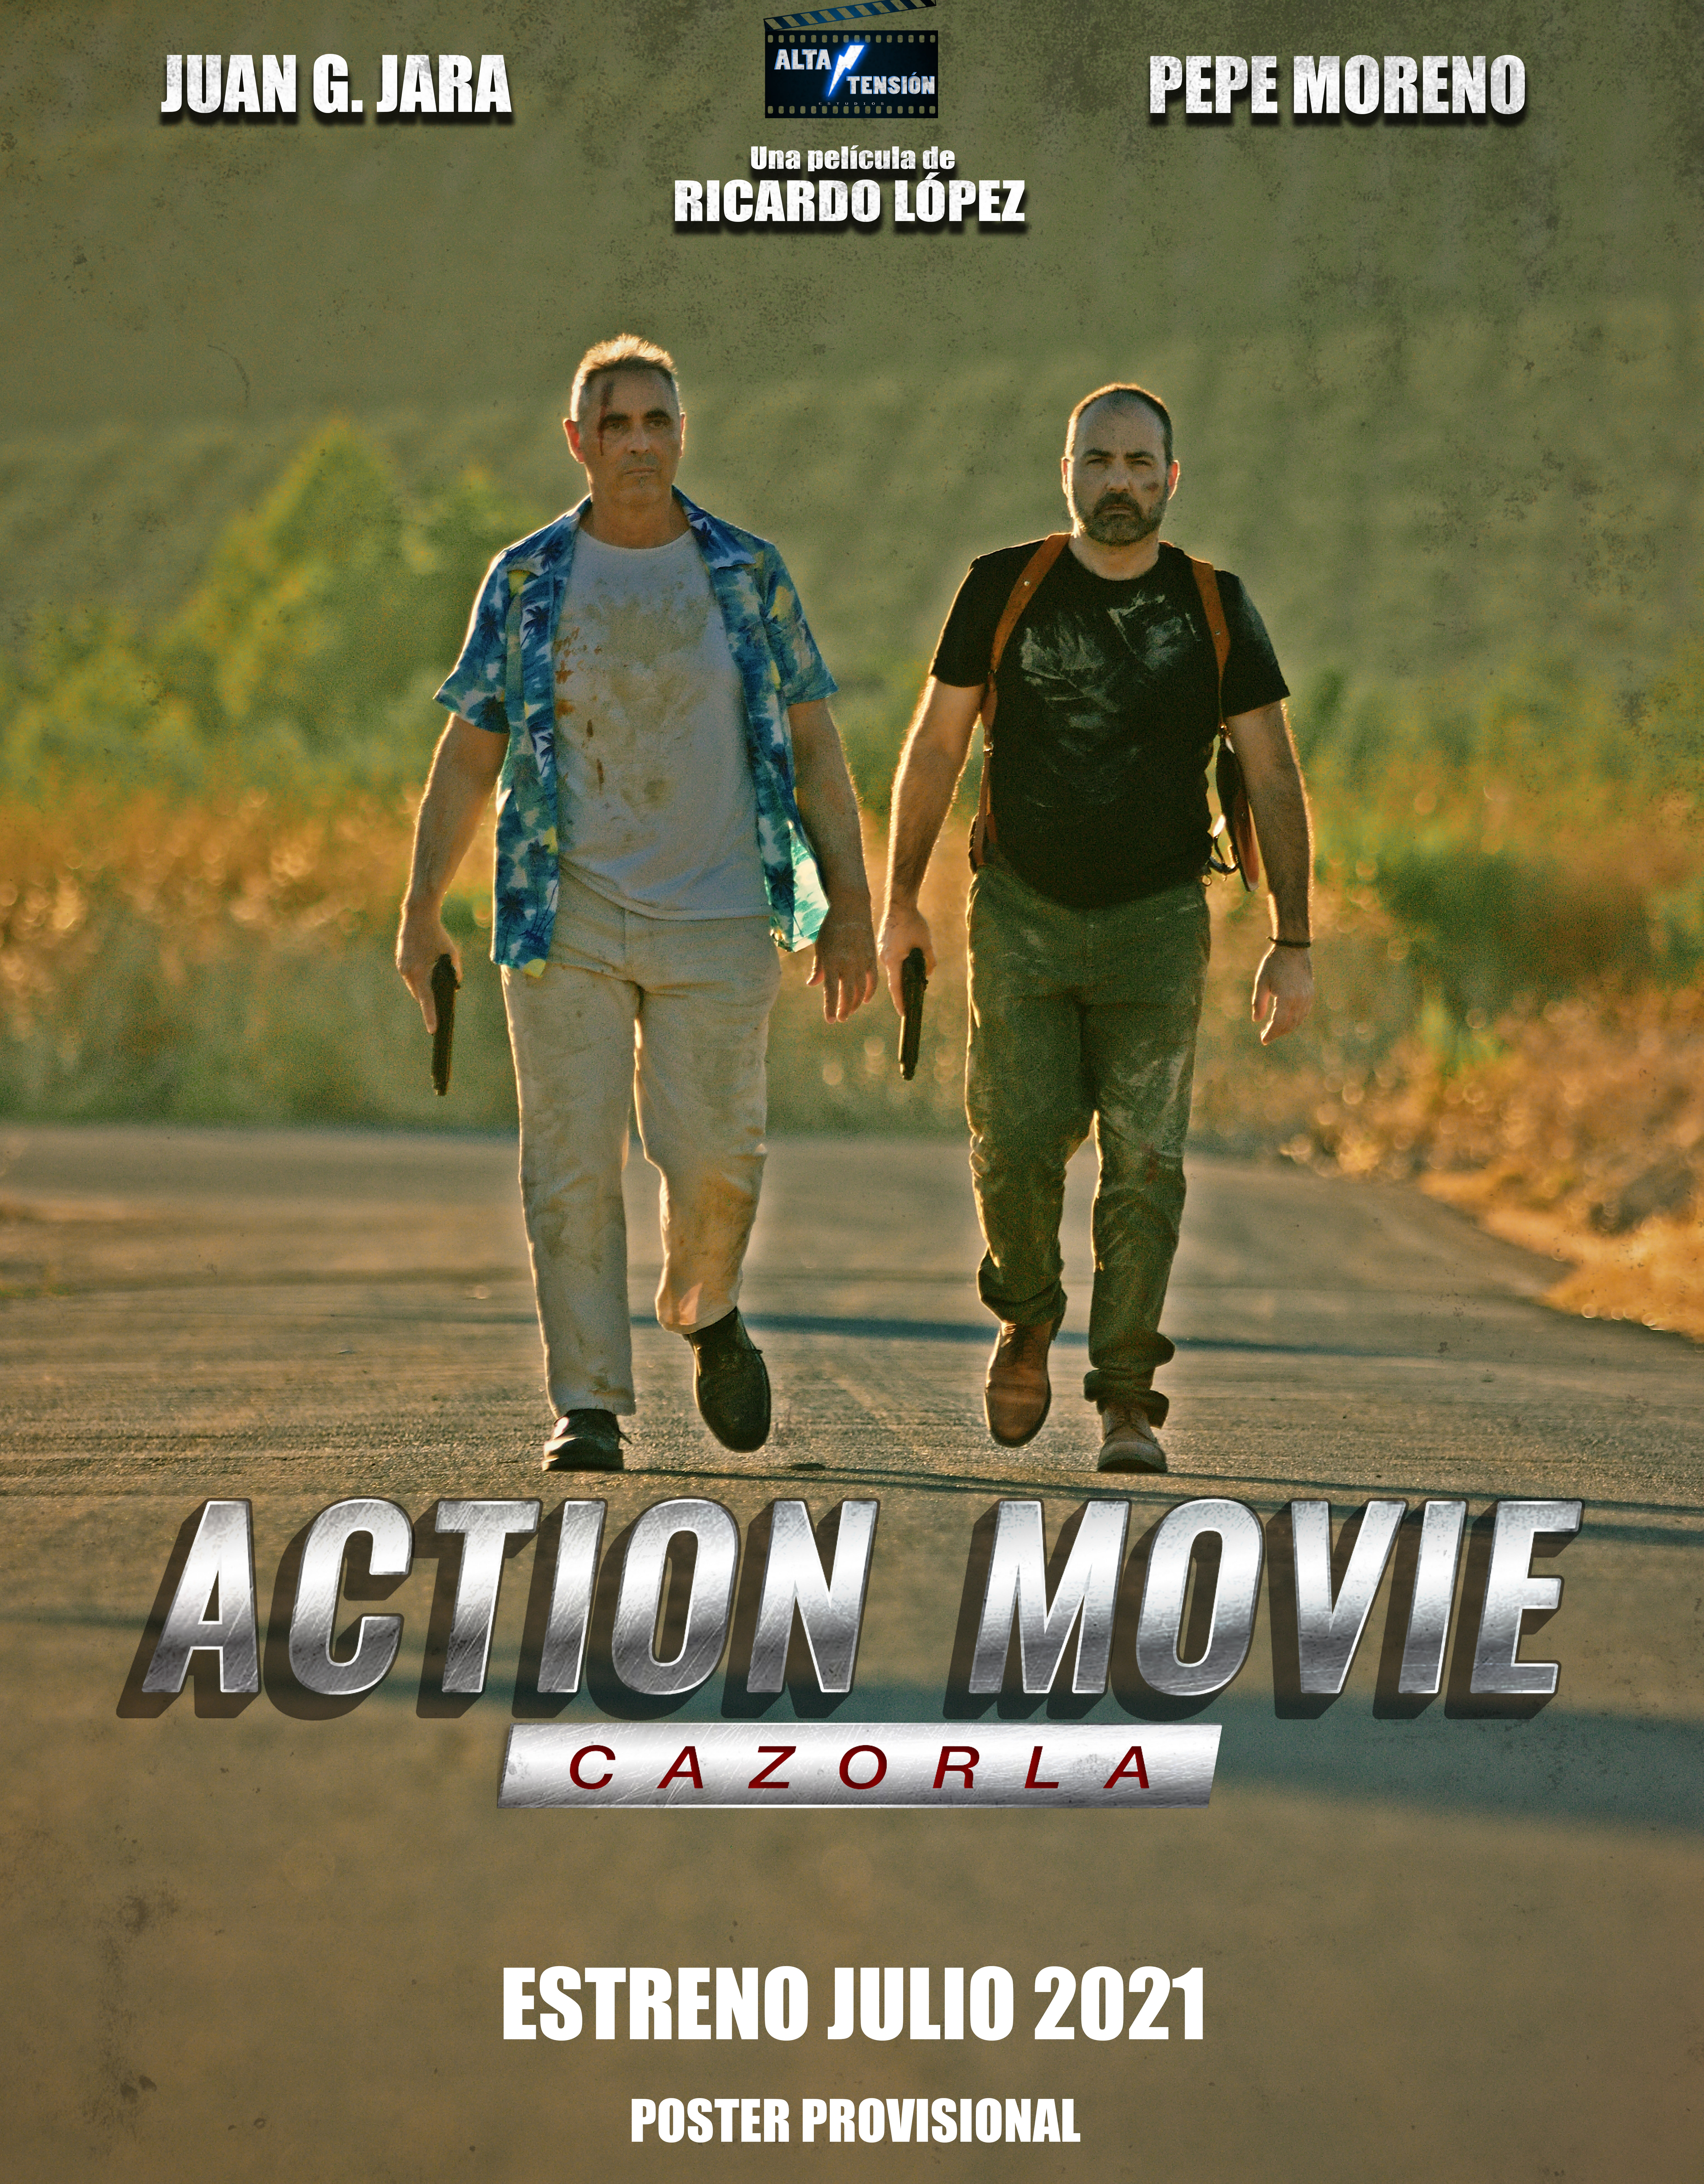 Action Movie Cazorla (2021) постер